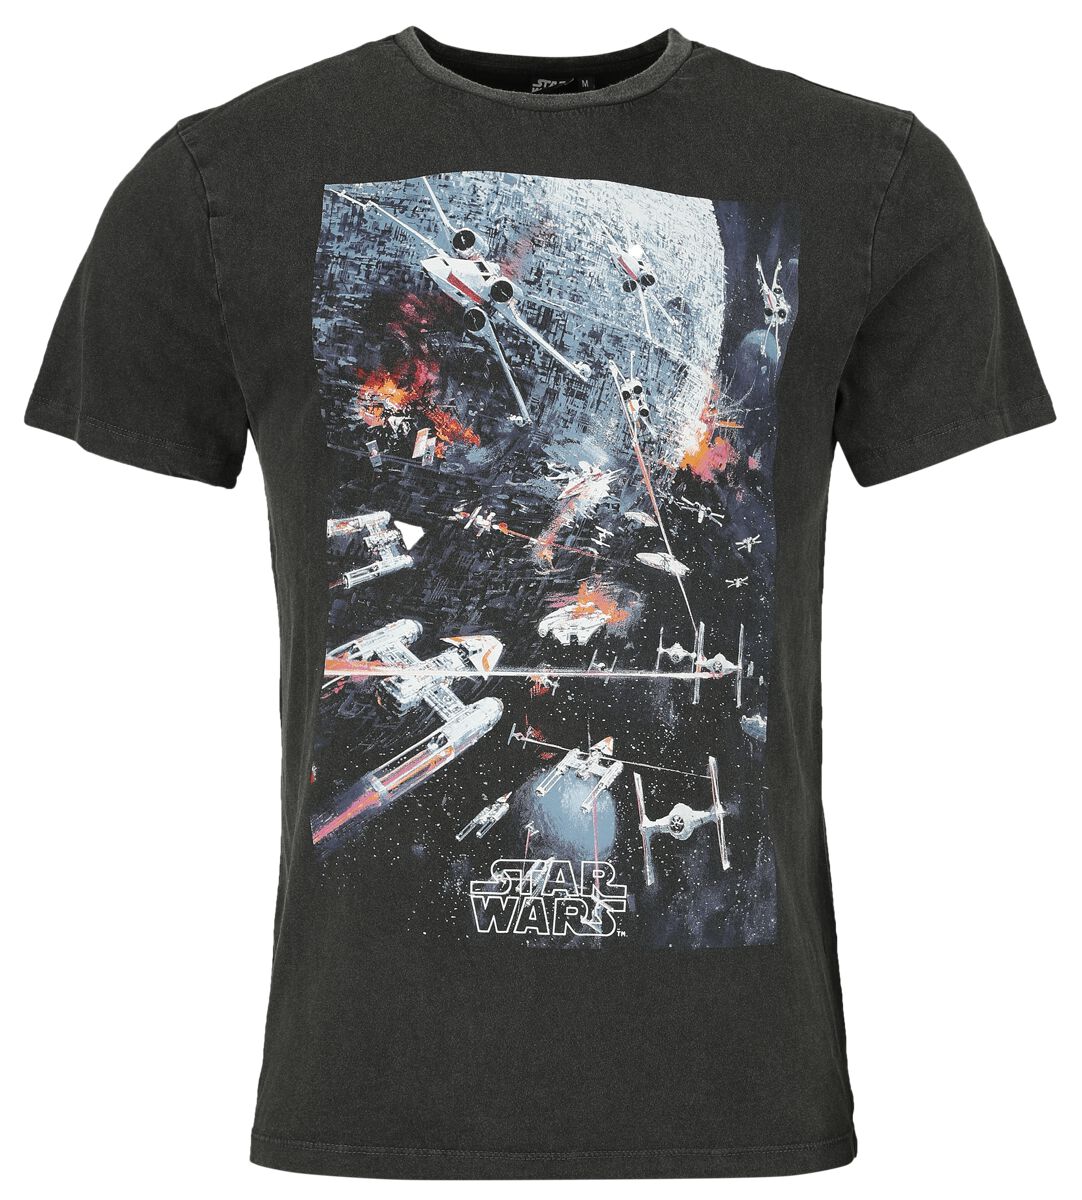 Star Wars T-Shirt - Classic - Space War - S bis XL - für Männer - Größe M - schwarz  - Lizenzierter Fanartikel